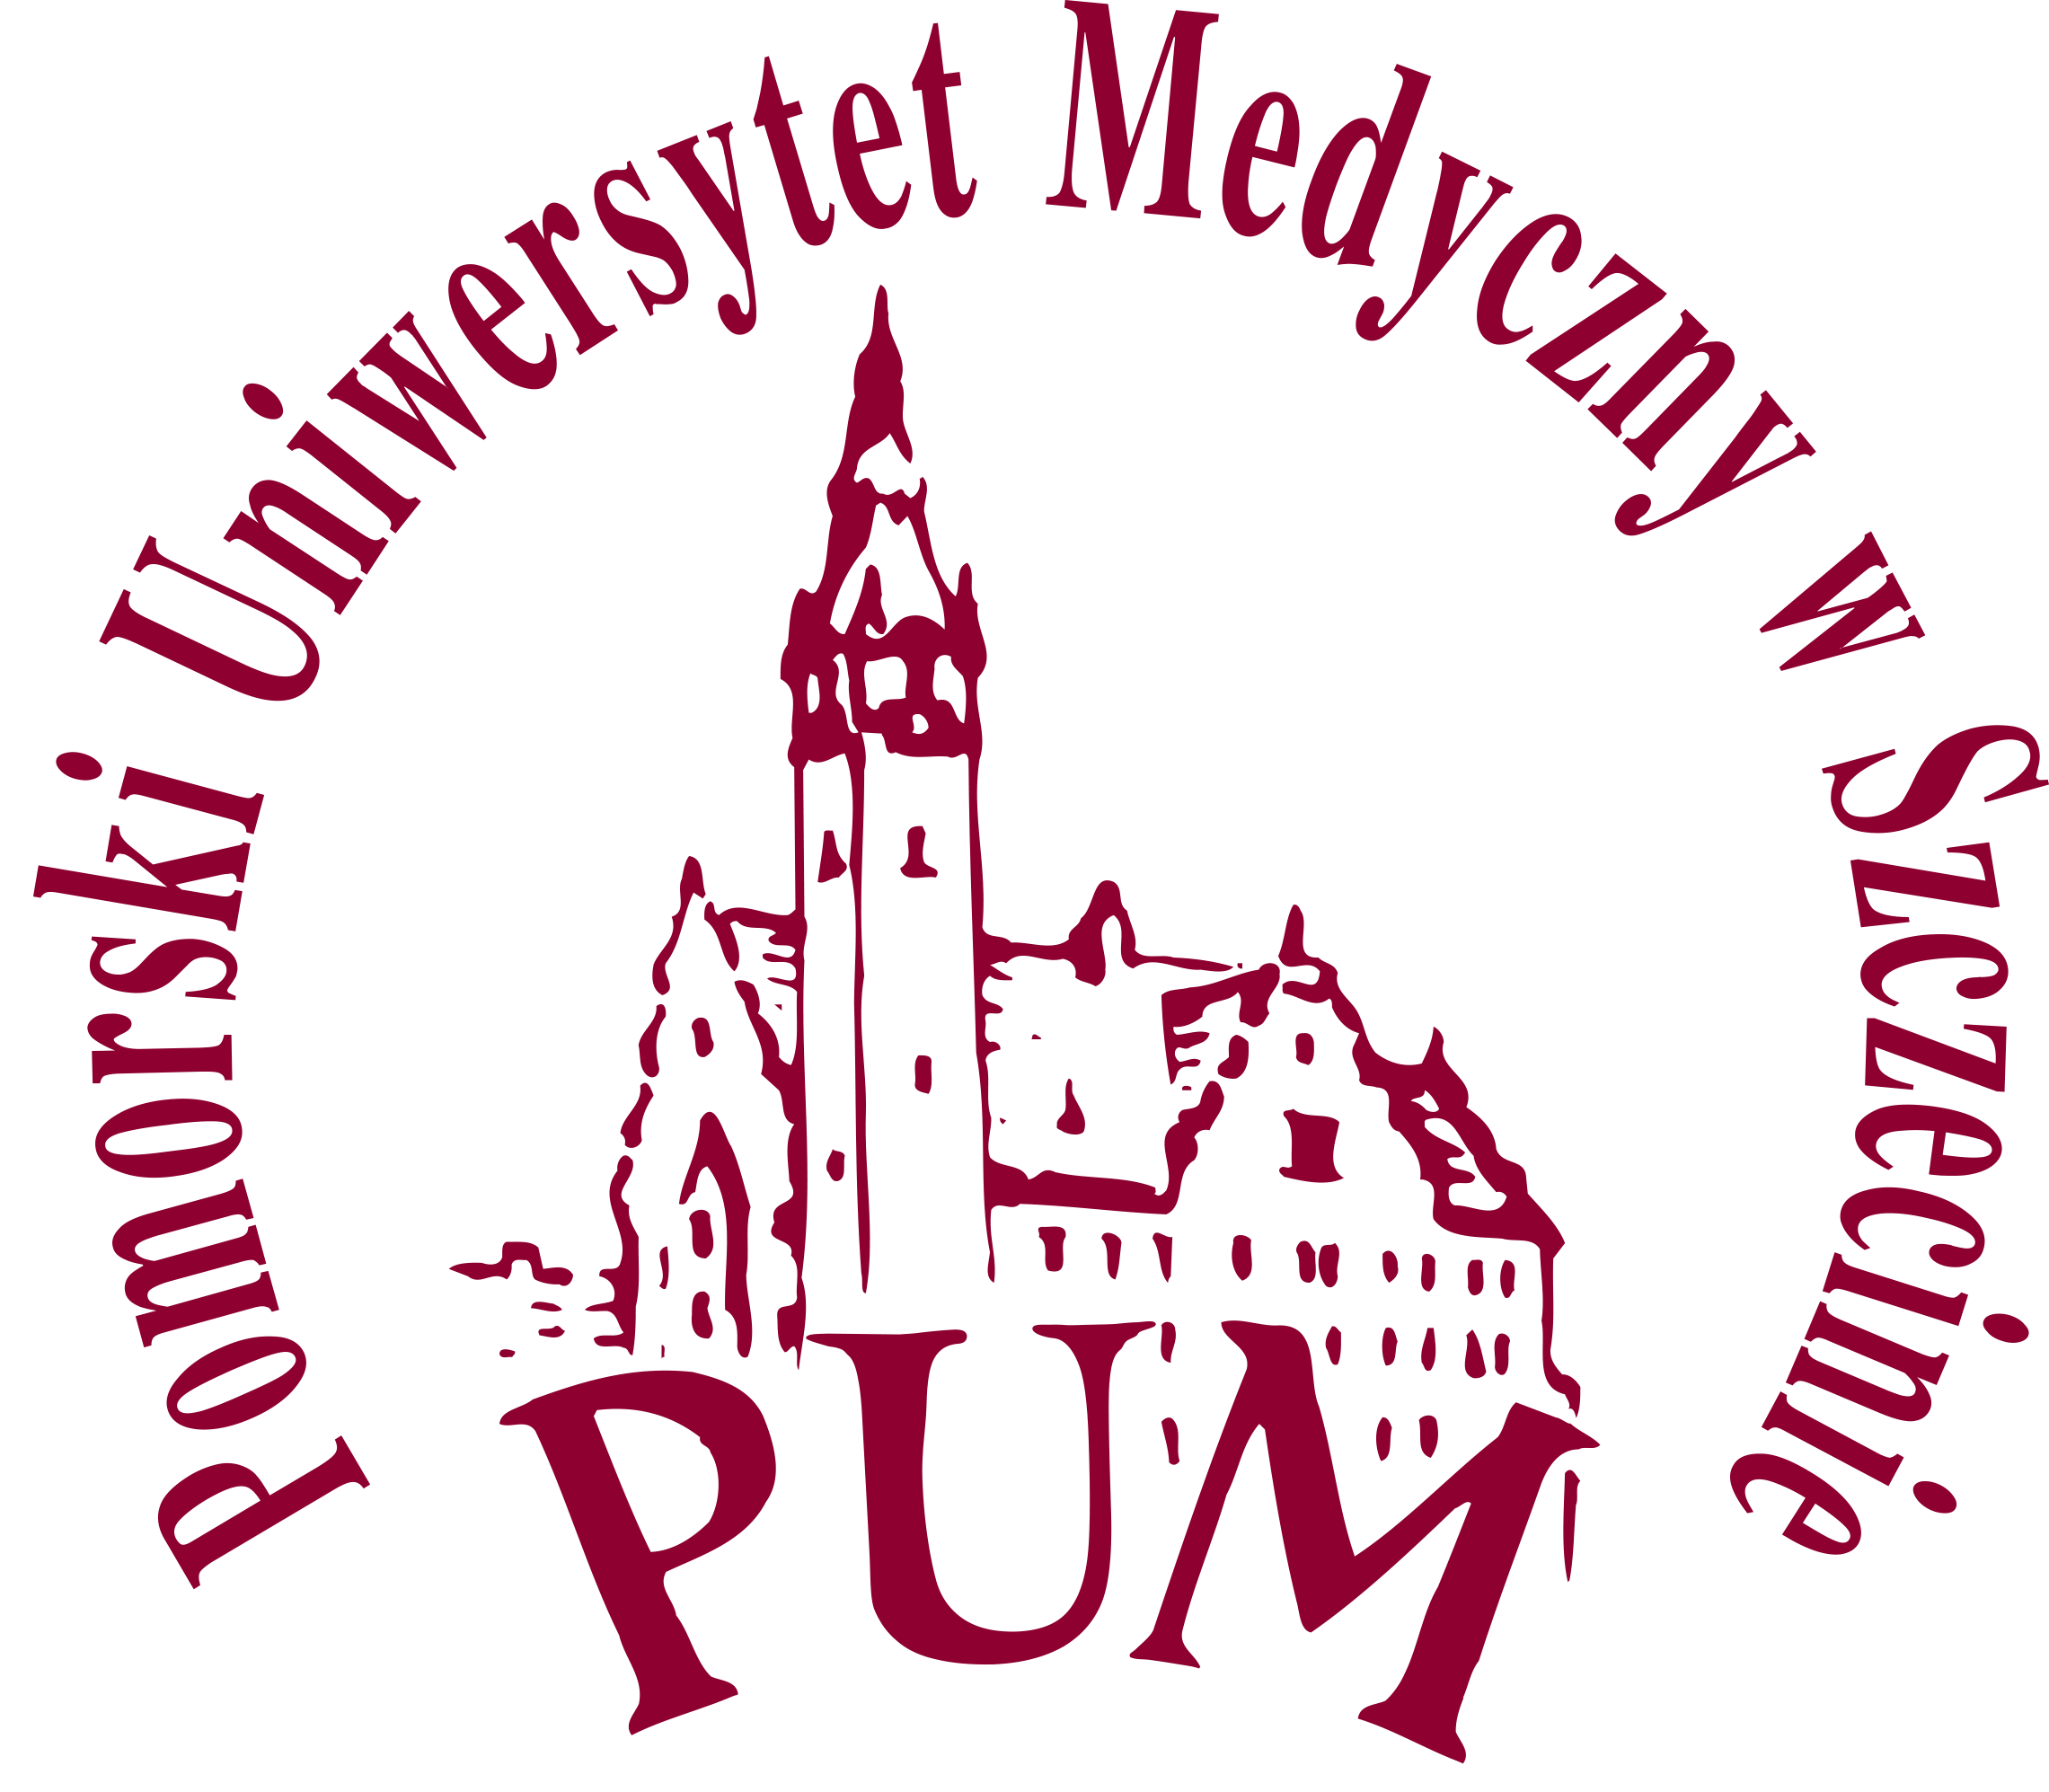 PUM logo